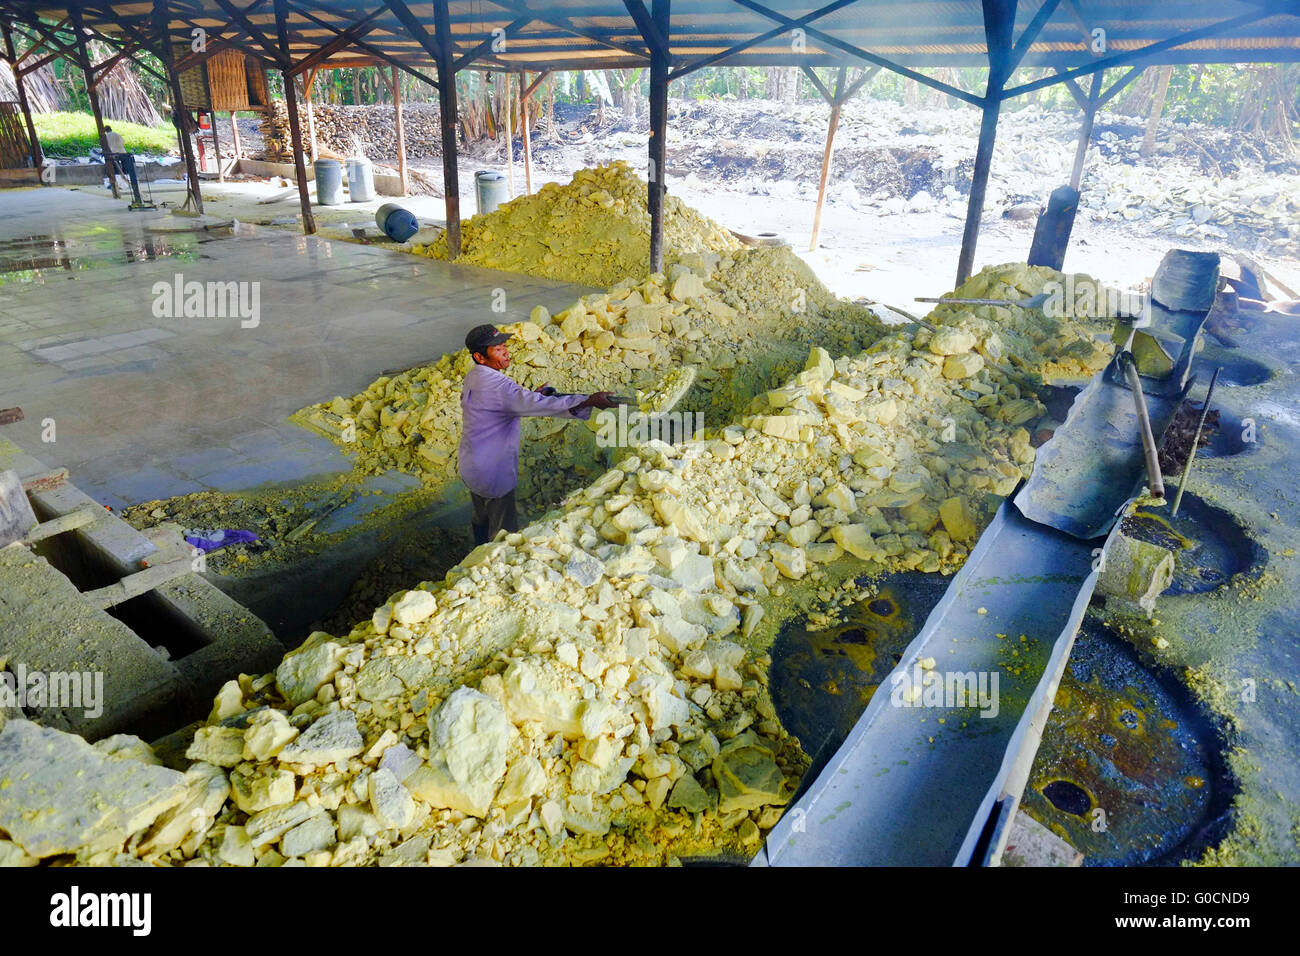 Tägliche Aktivität innerhalb der traditionellen Schwefel-Fabrik in Ijen, Indonesien. Schwefel ist eine saure vulkanische mit gelber Farbe. Stockfoto